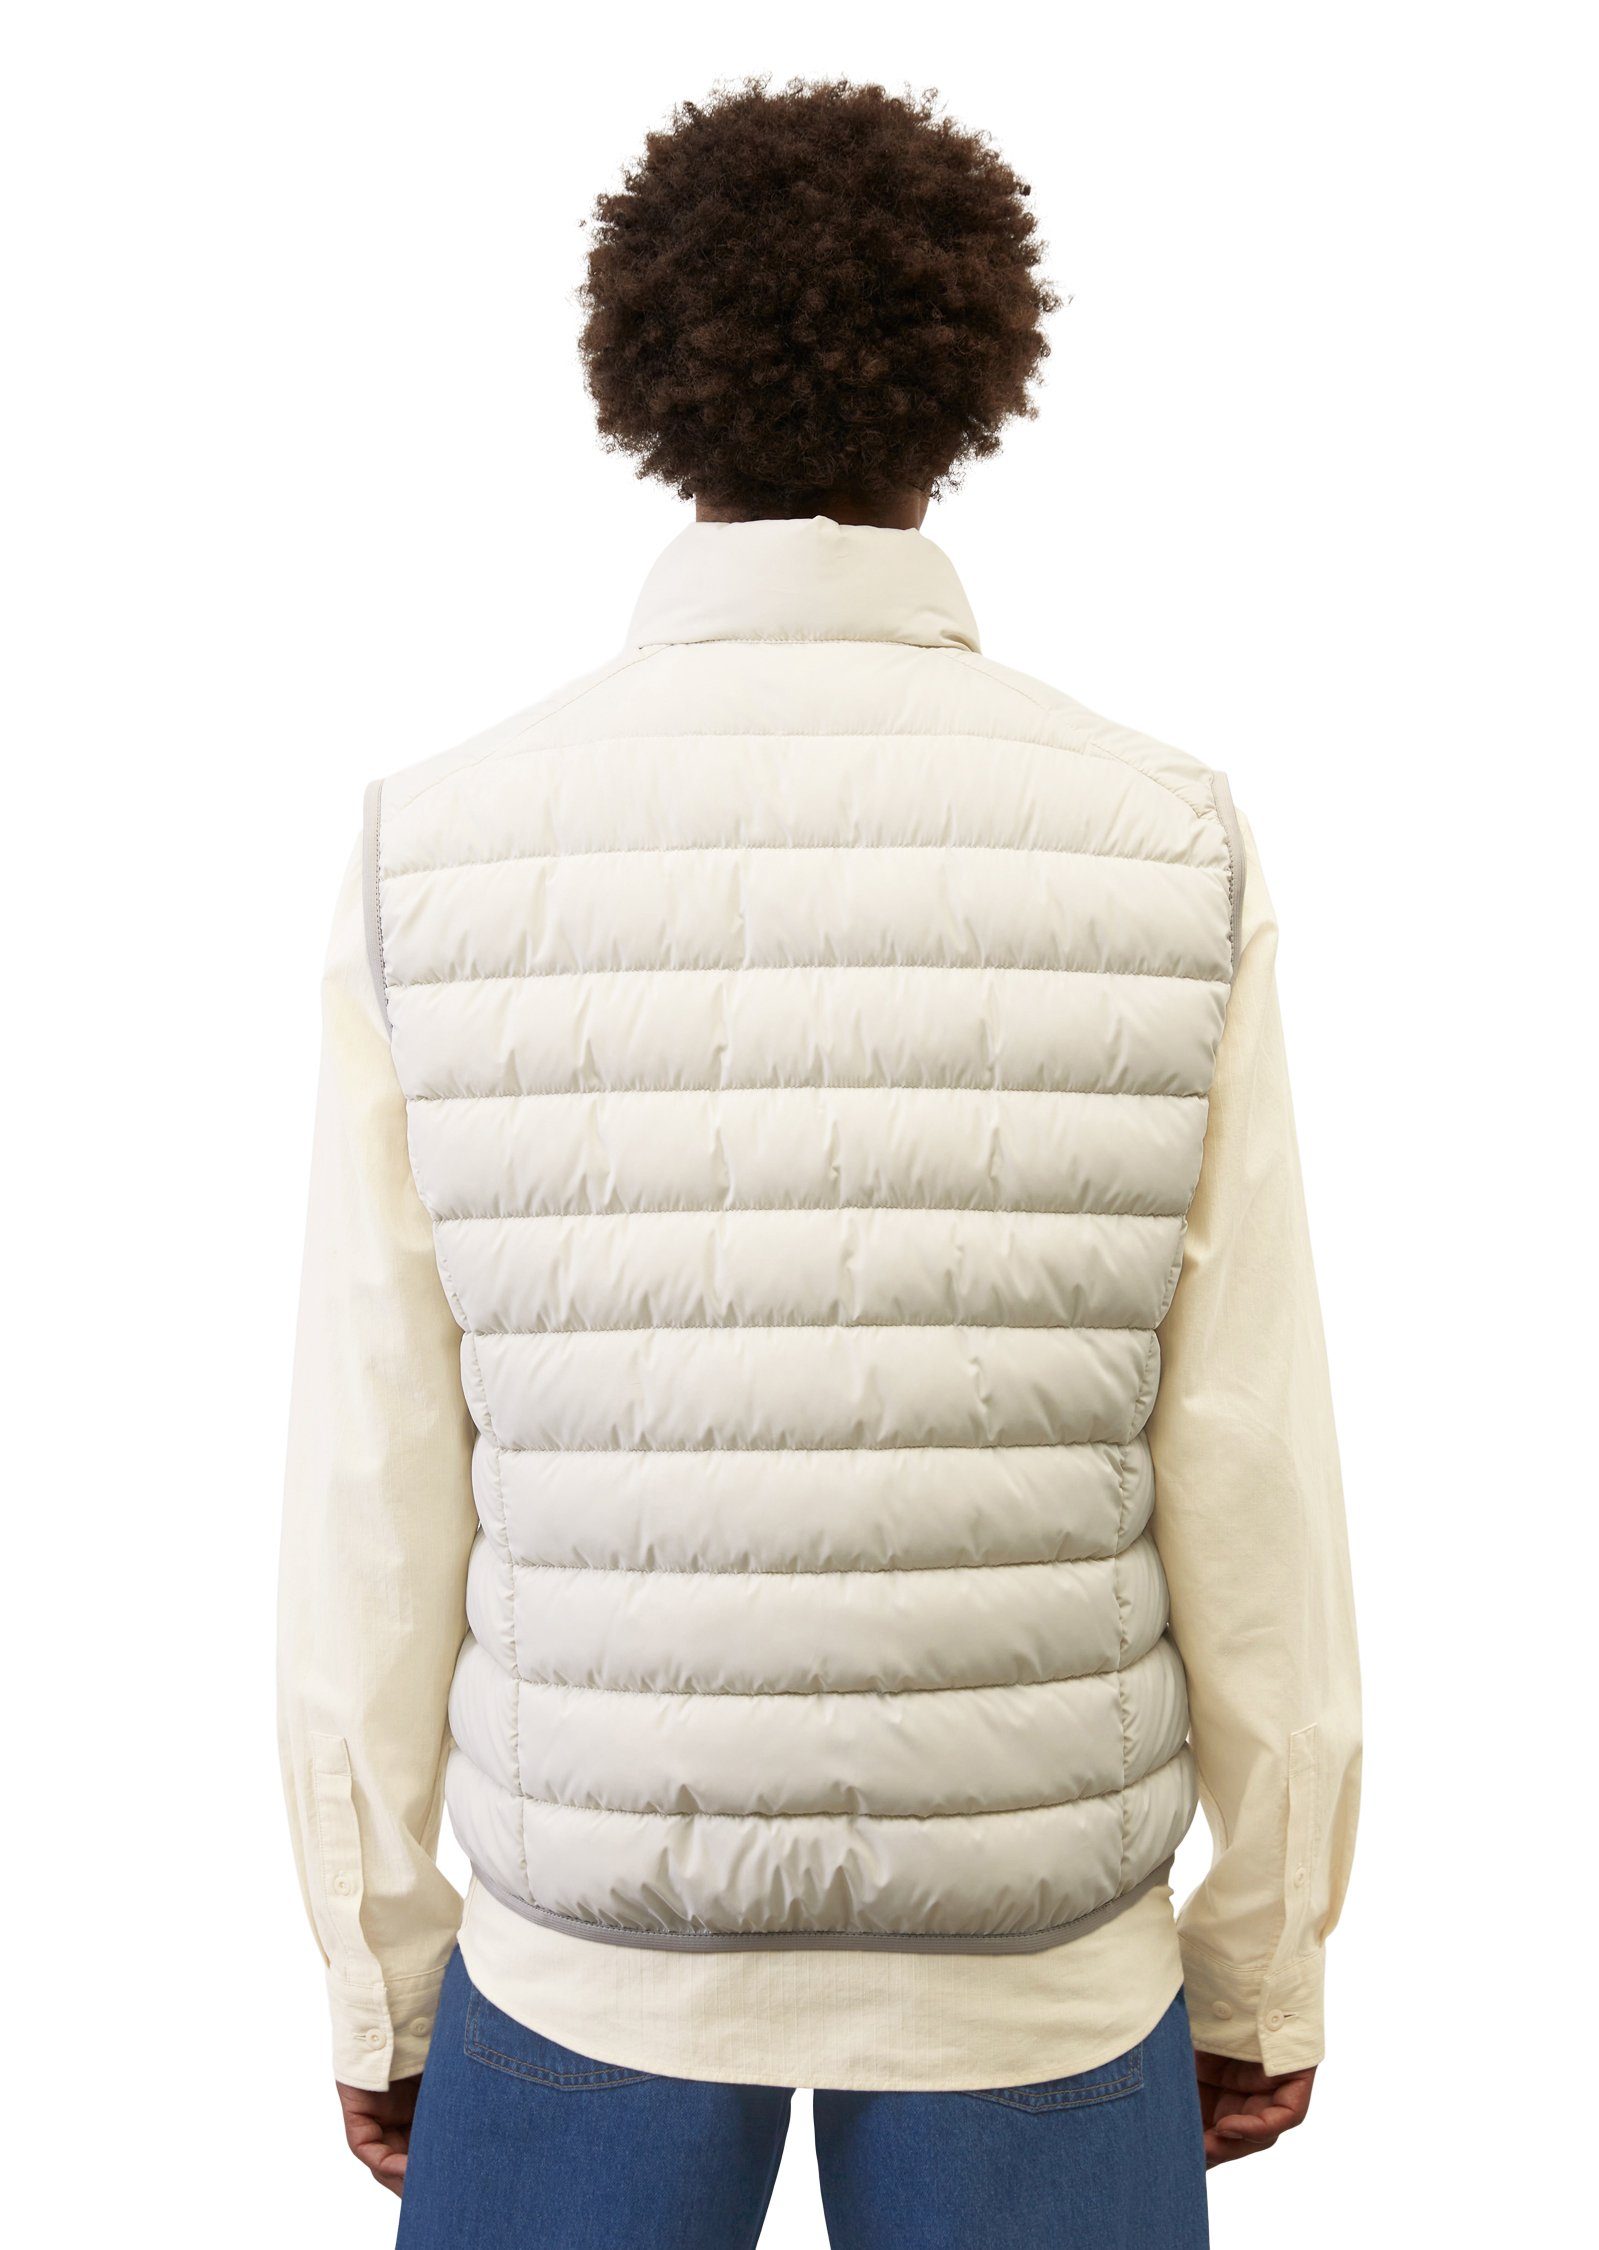 Marc O'Polo Steppweste wasserabweisender linen sdnd, white collar Oberfläche mit Vest, stand-up